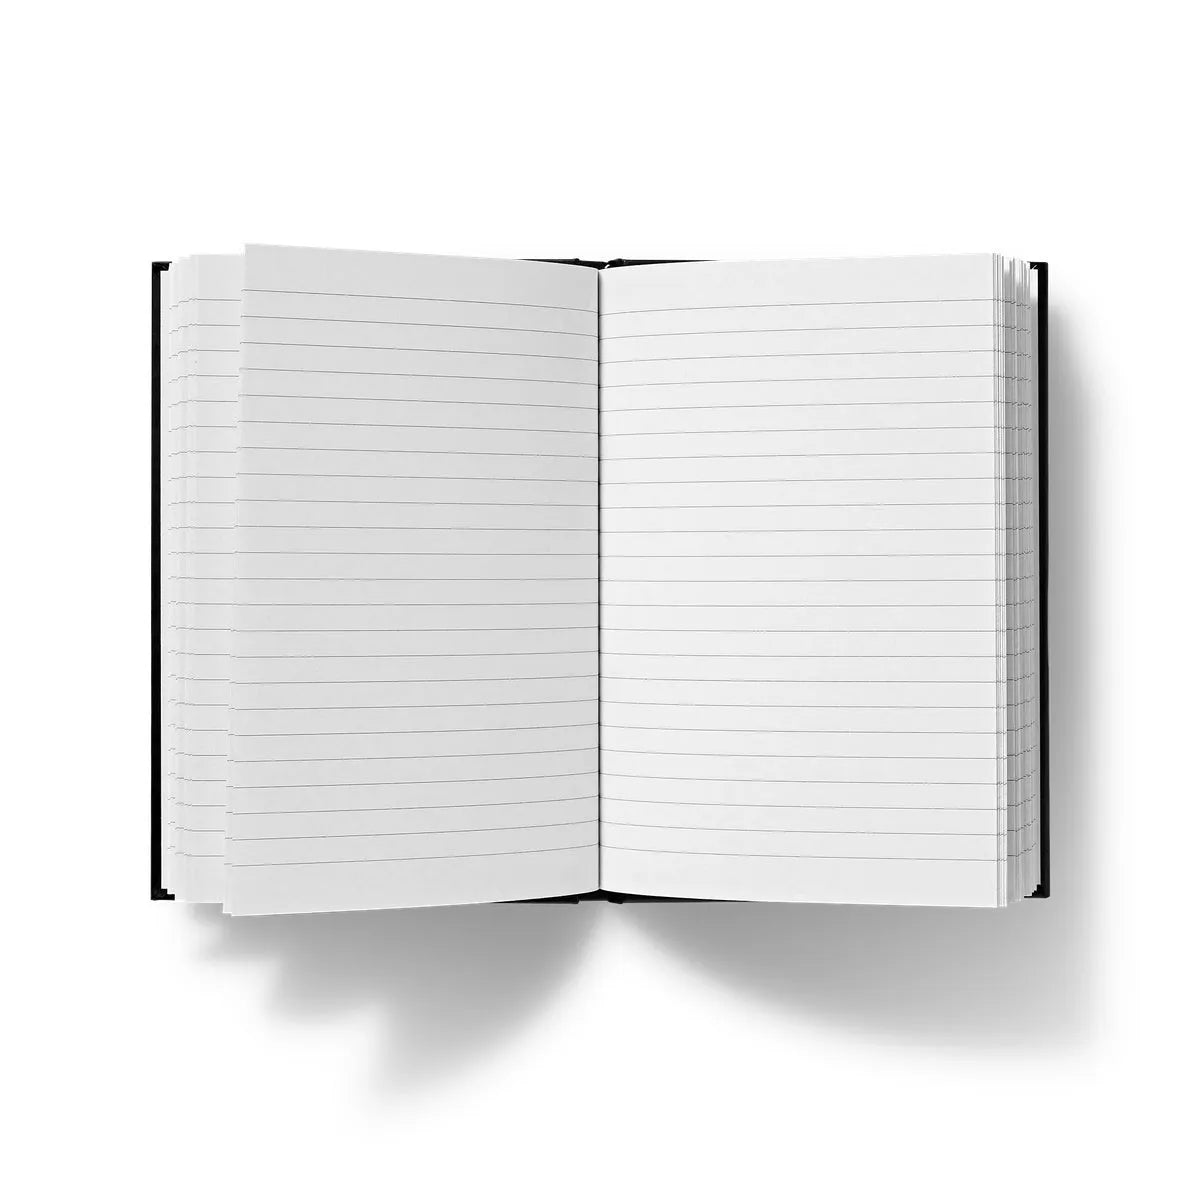 Thistles By John Singer Sargent Hardback Journal - Notebooks & Notepads - Aesthetic Art